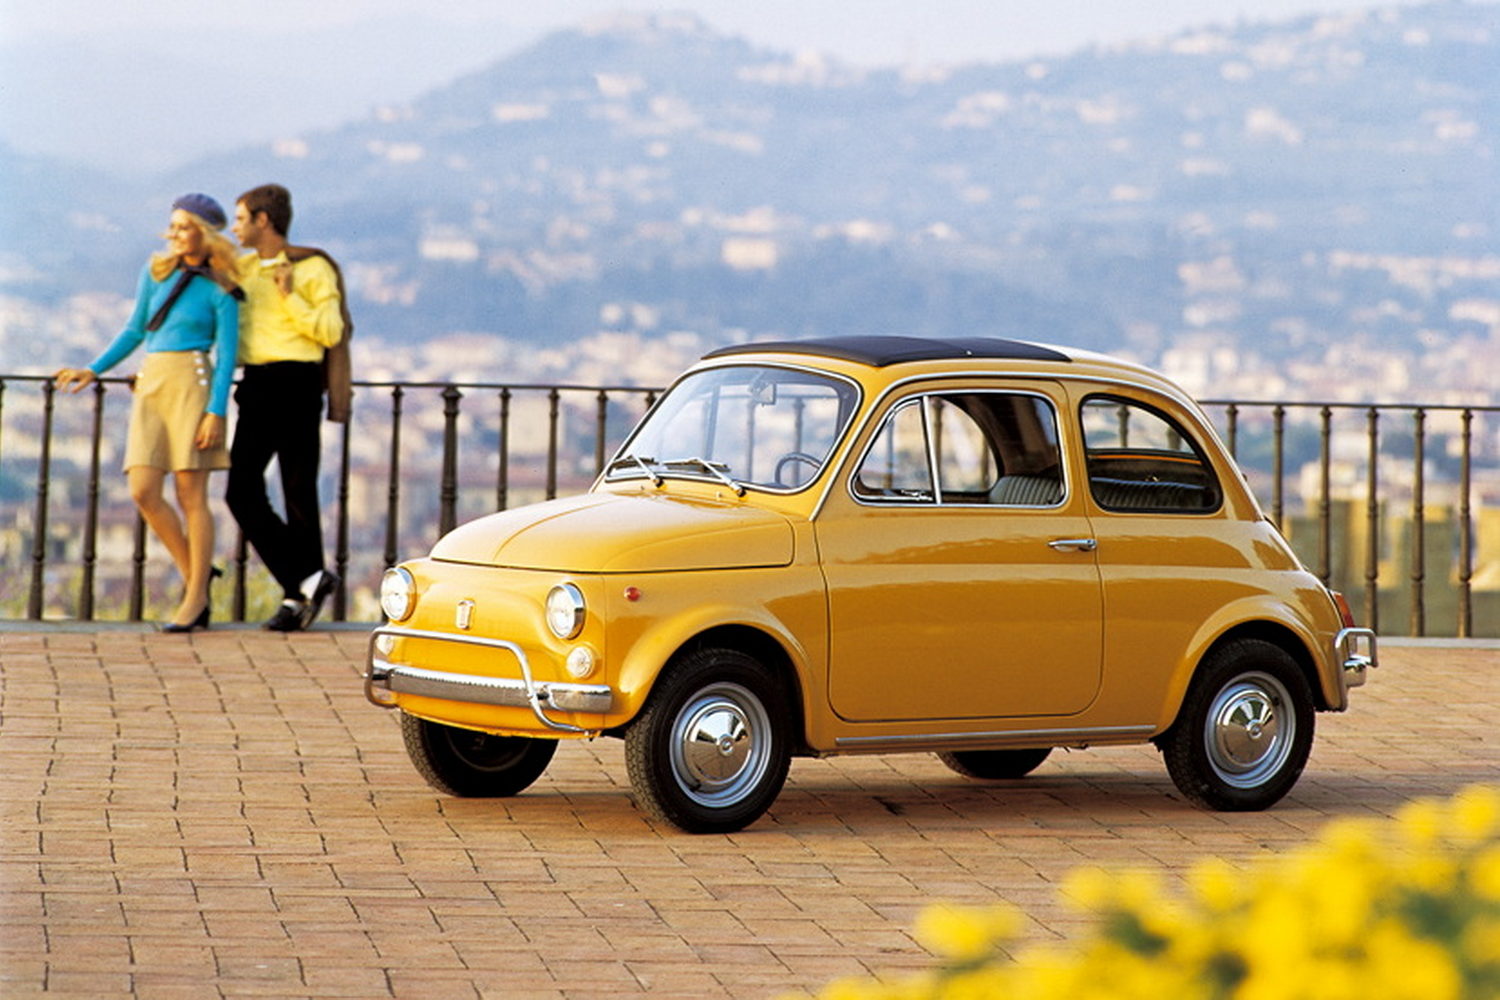 Fiat 500 - the history of Italy